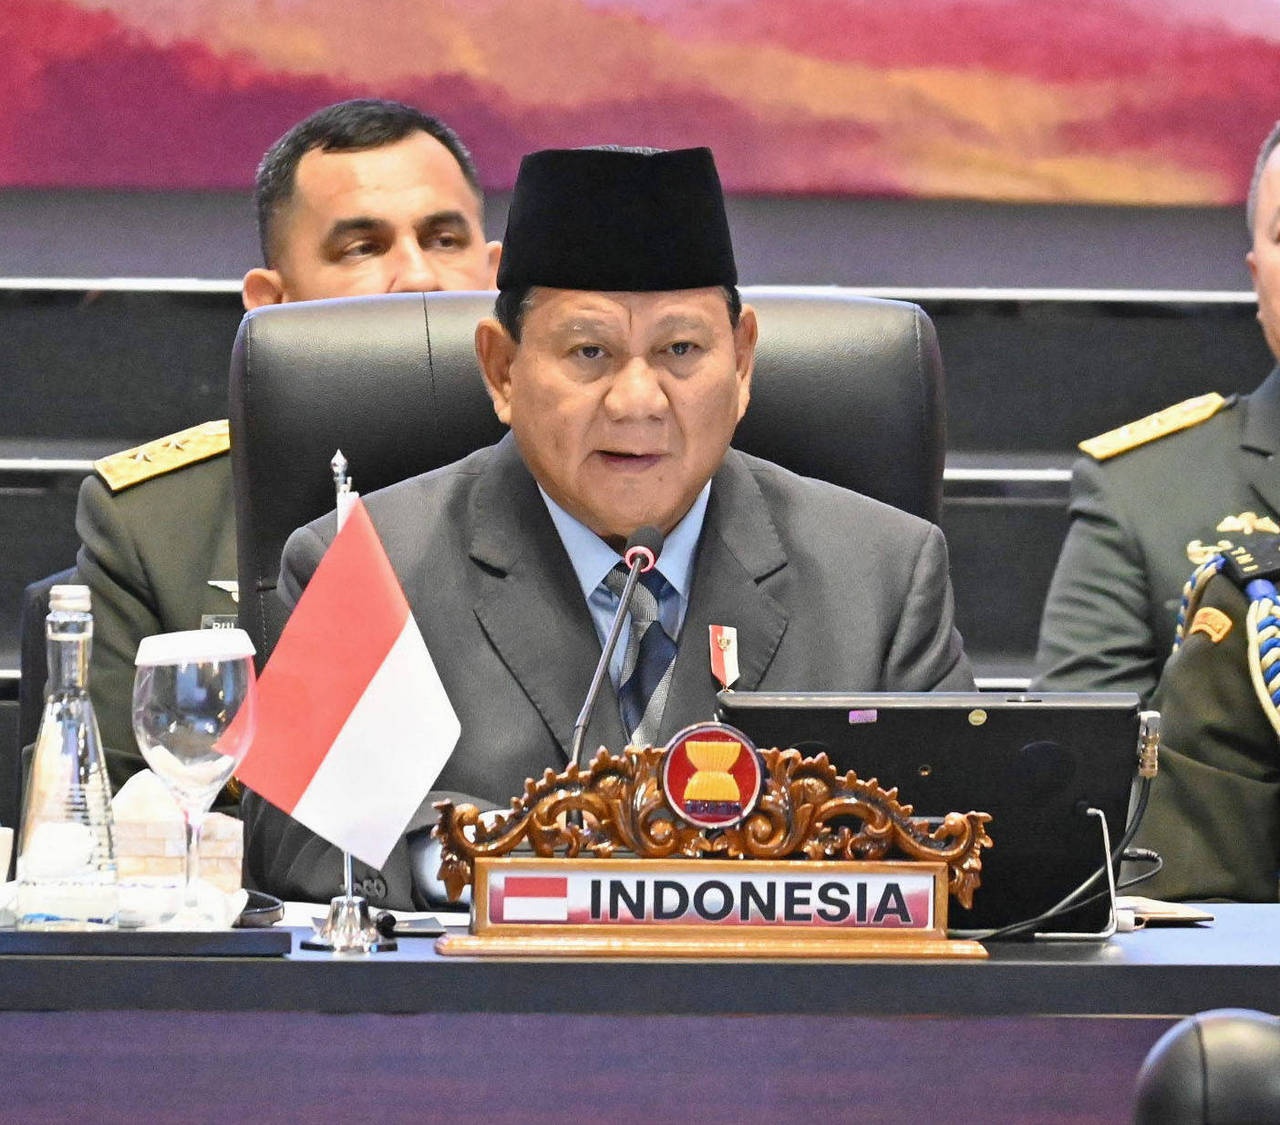 Прабово Субианто, избранный президент Индонезии.